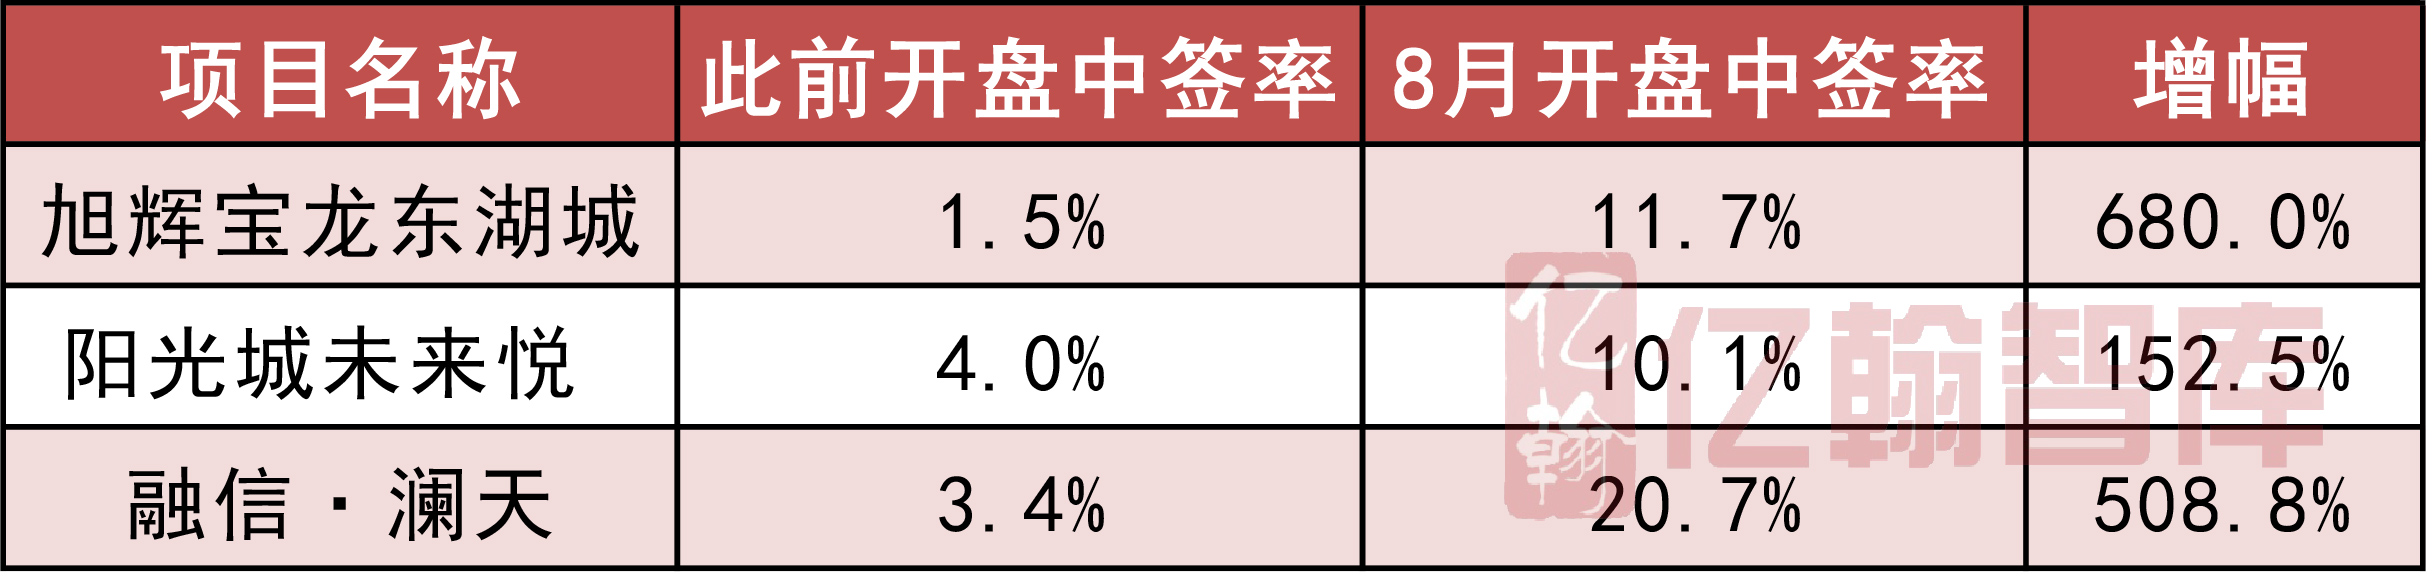 2018年1-8月中国典型房企单项目销售业绩TOP100 “金九”好戏欲提前上演-中国网地产